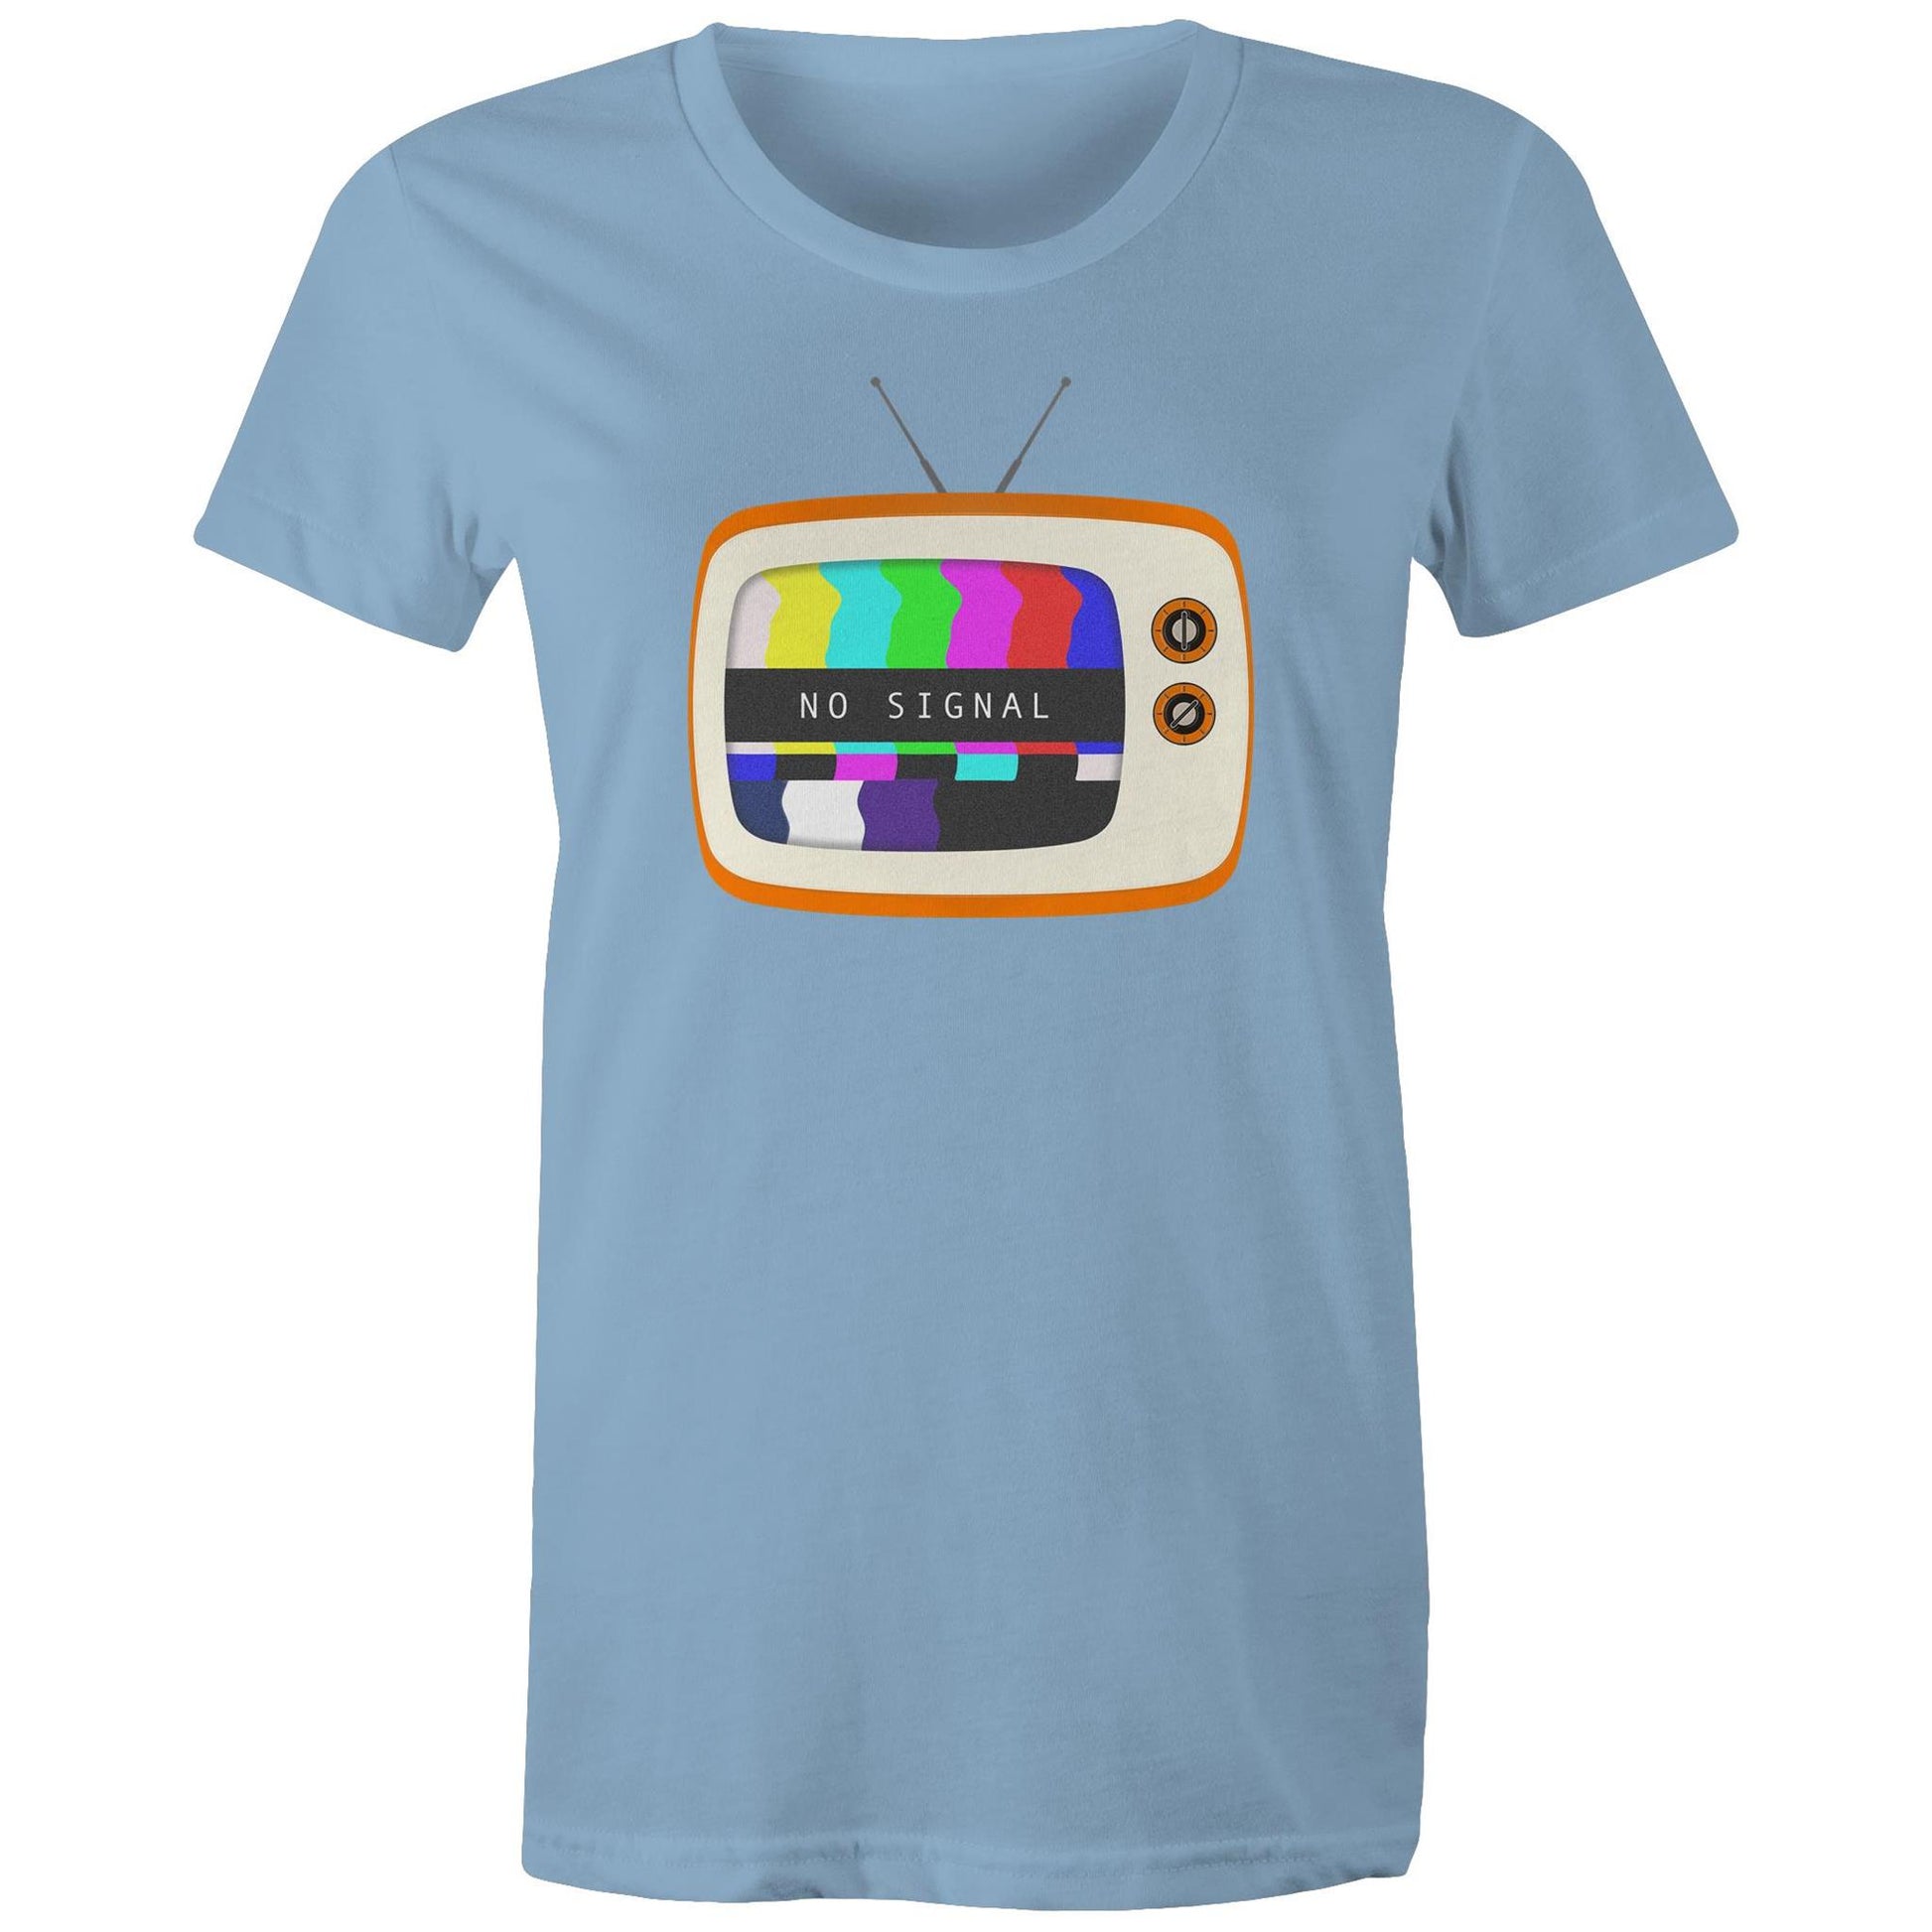 Retro Television, No Signal - Womens T-shirt Carolina Blue Womens T-shirt Retro